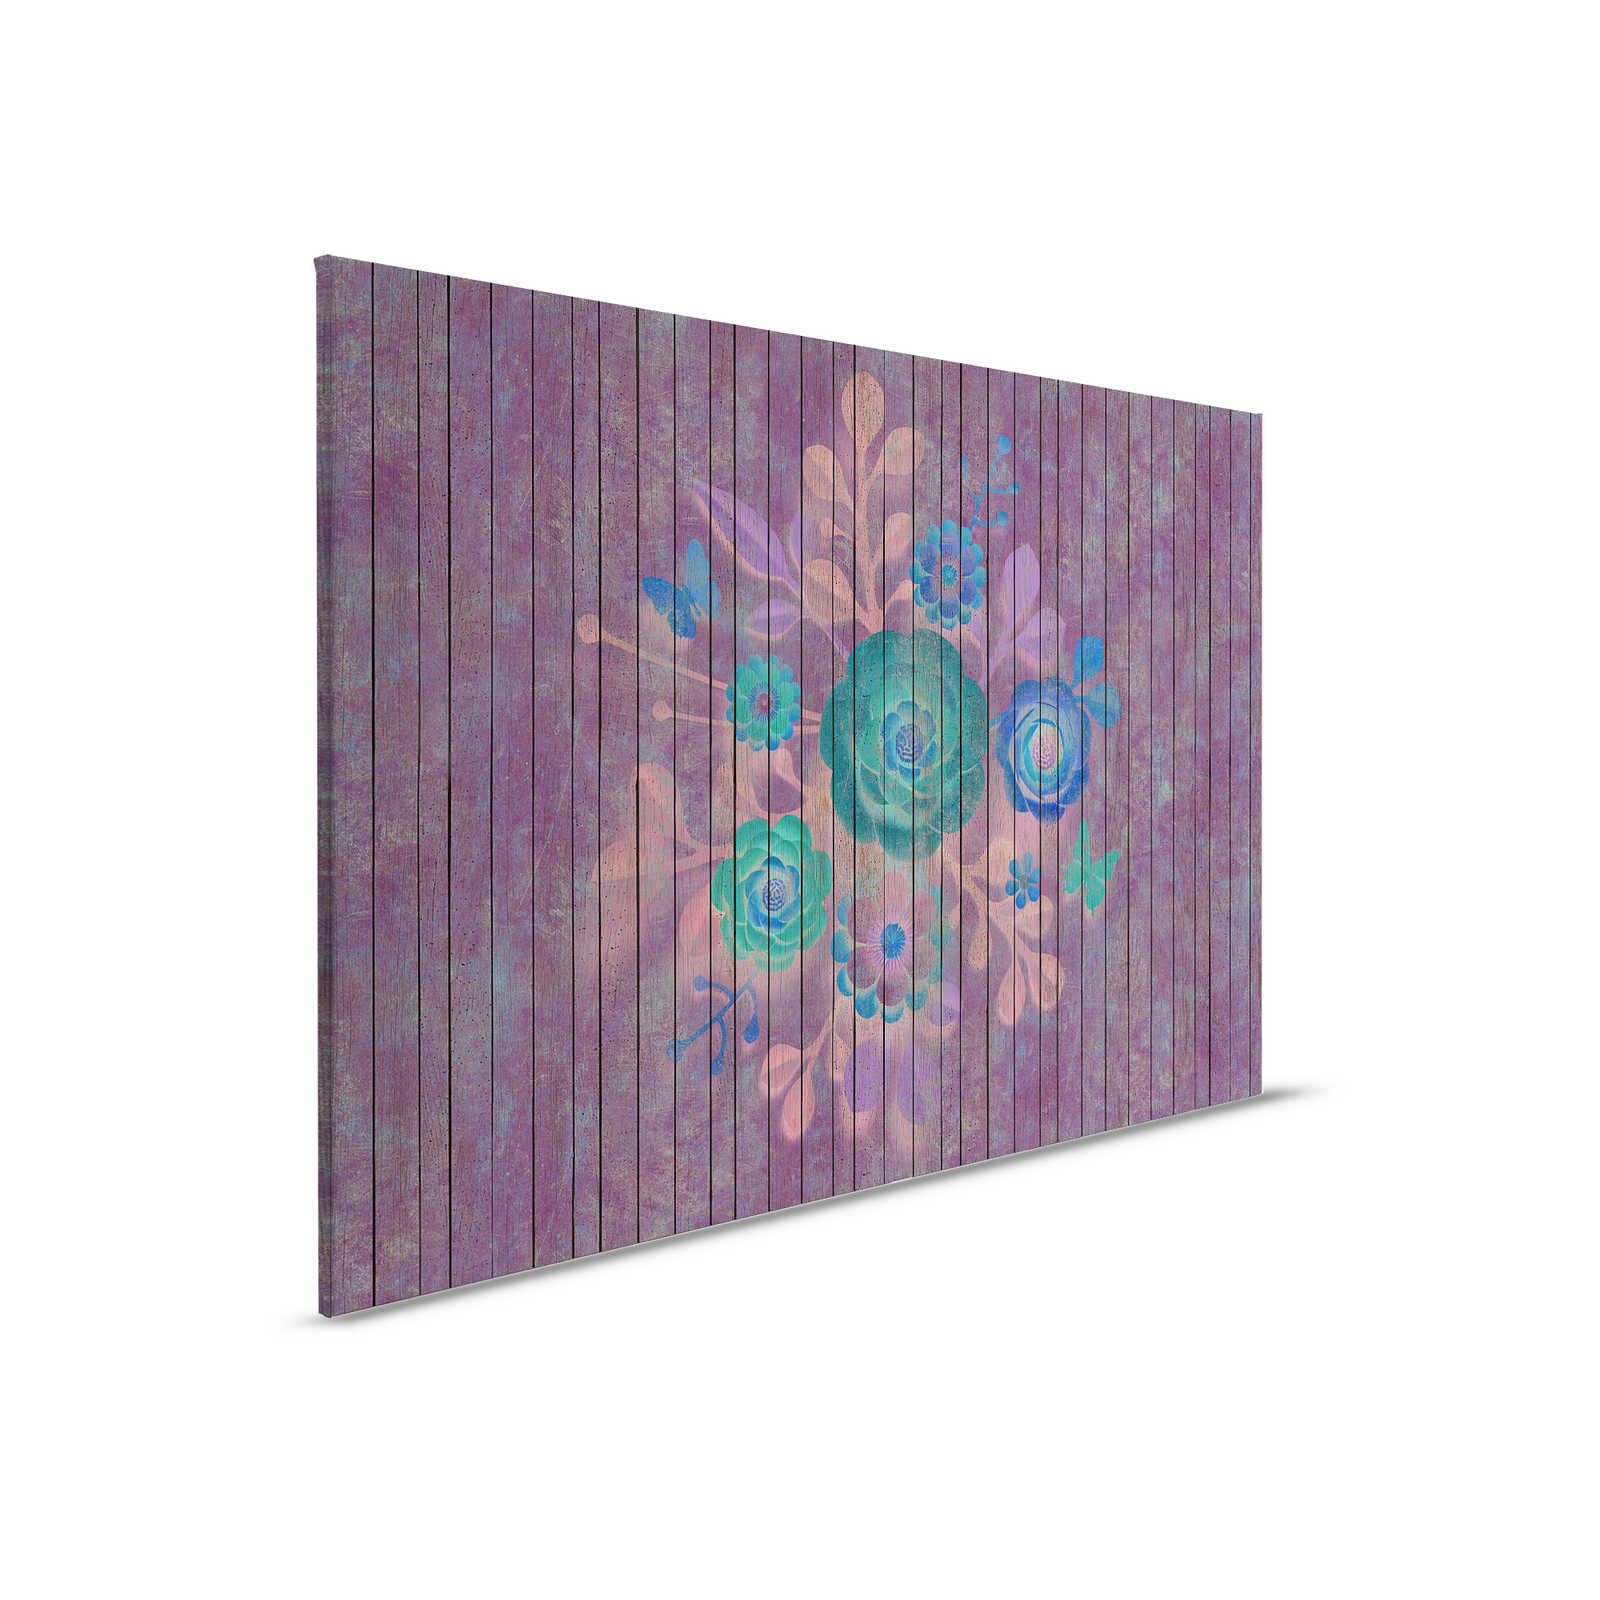 Spray bouquet 1 - Quadro su tela con fiori su tavola - Pannelli di legno larghi - 0,90 m x 0,60 m
